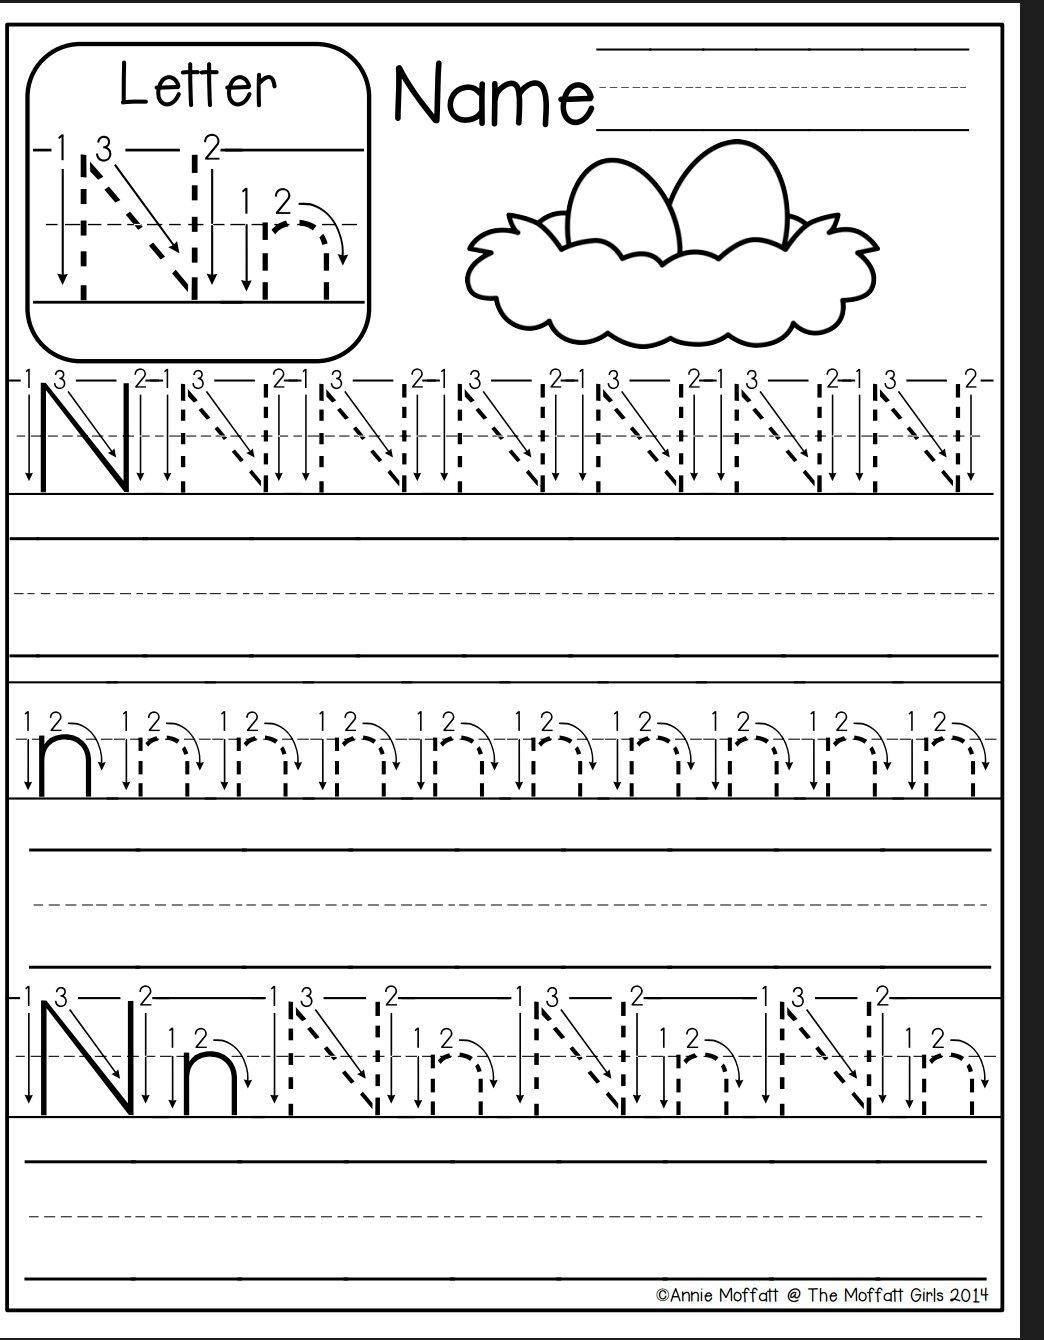 Letter N Worksheet | Letter N Worksheet, Preschool Writing with regard to Tracing Letter N Worksheets For Preschool